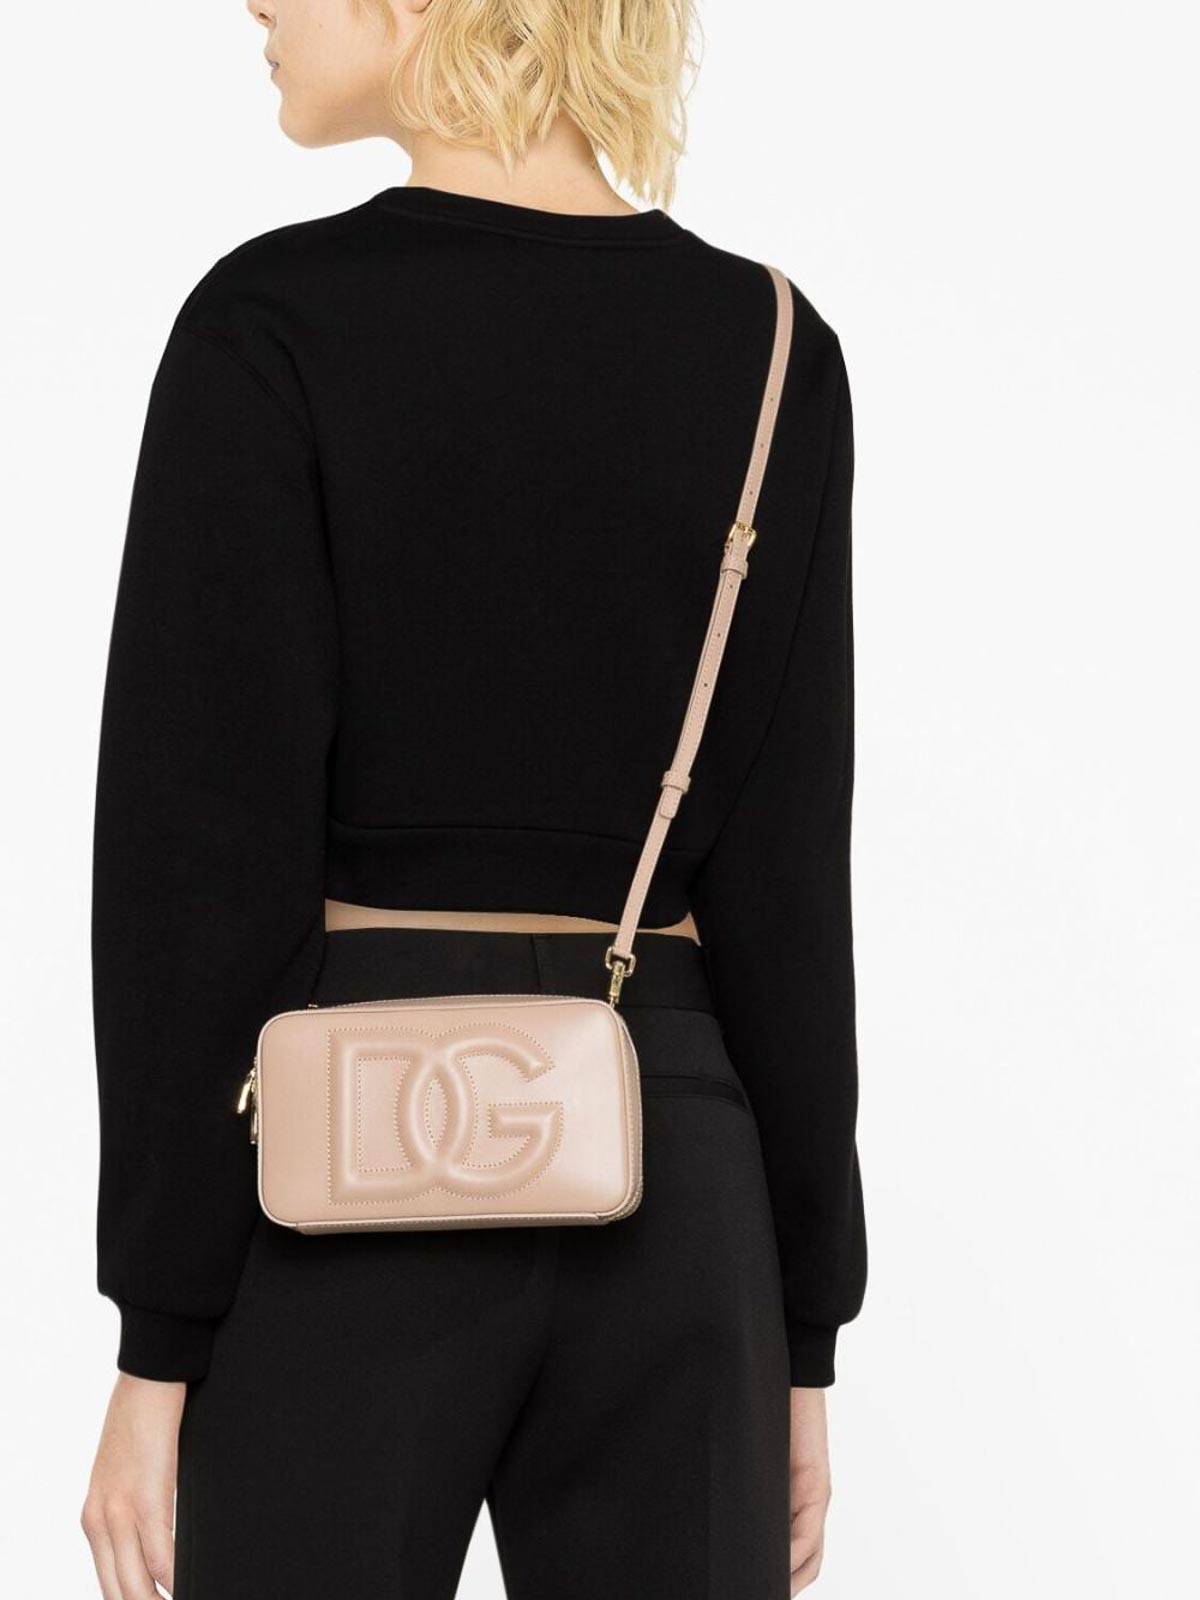 Shop Dolce & Gabbana Dg Logo Leather Camera Bag In Light Pink